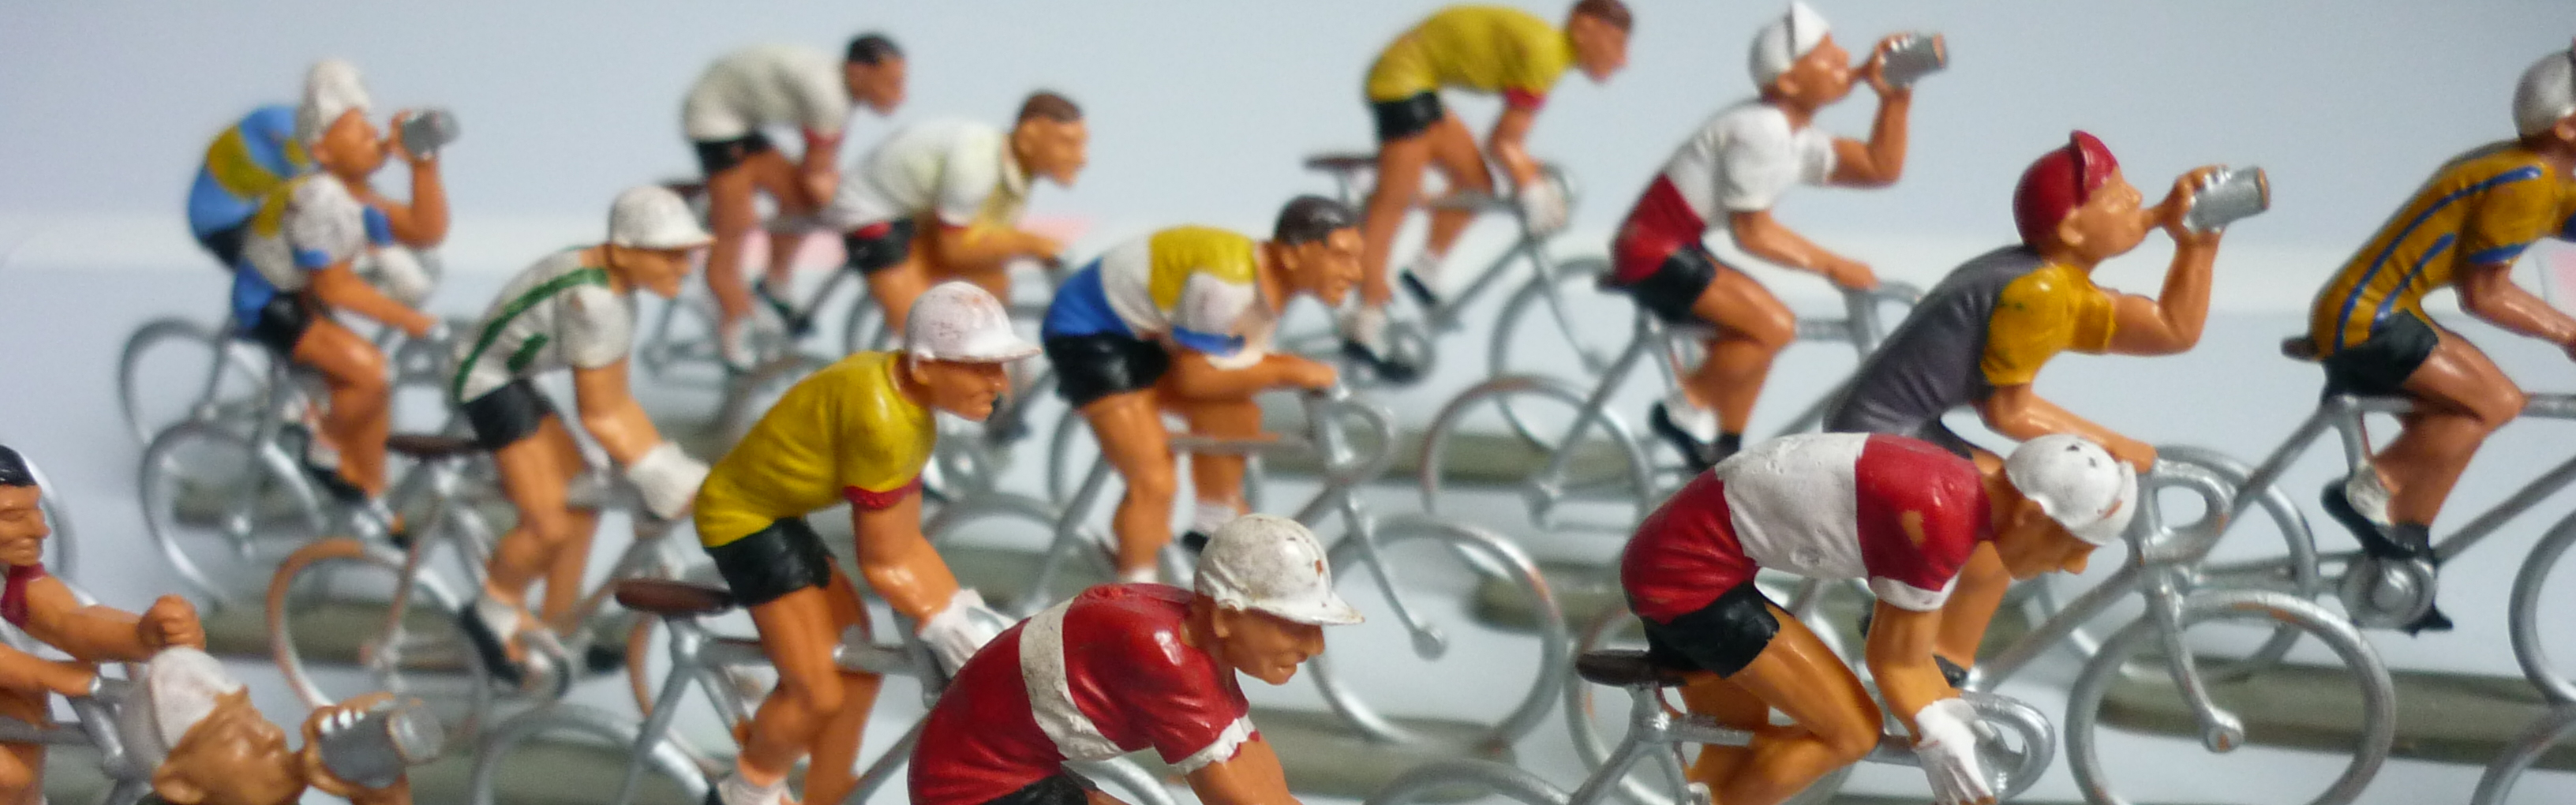 miniature cycliste permanent avec vélo, monde vélo journée concept